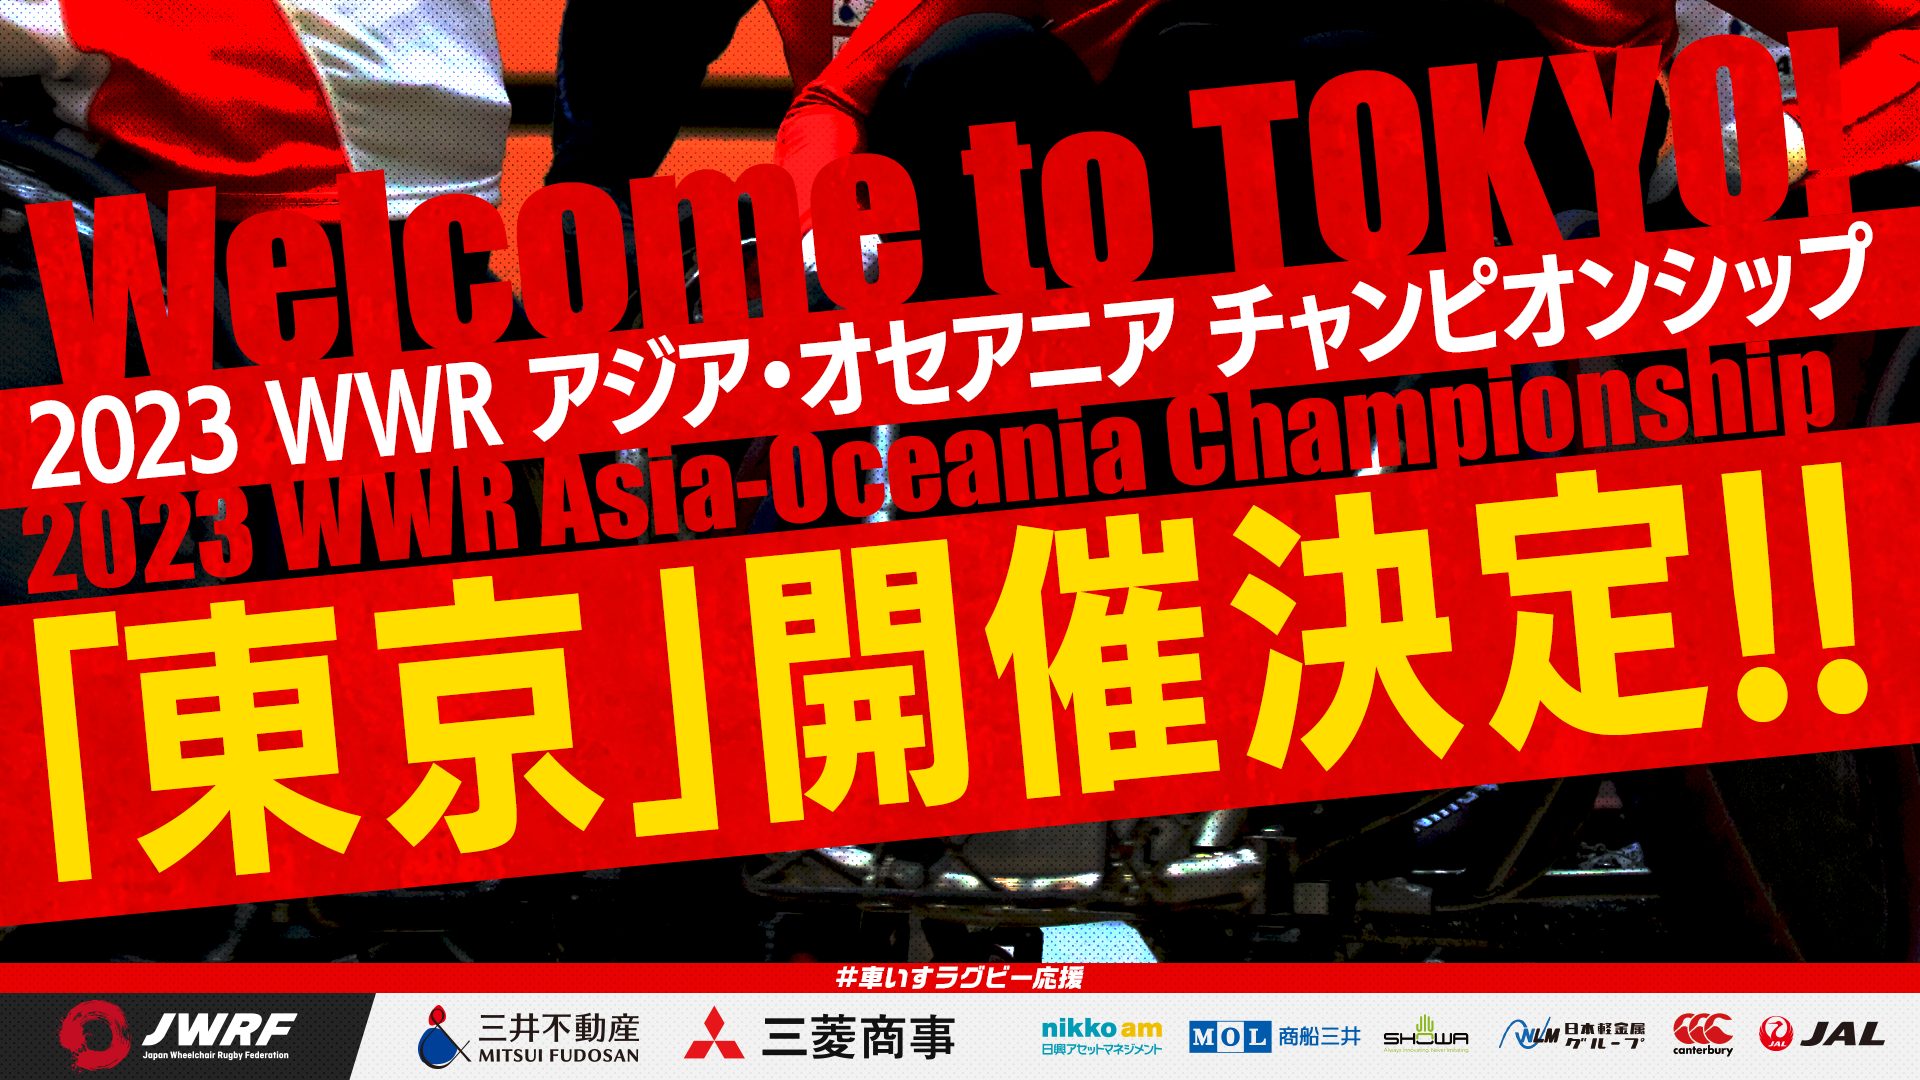 2023 WWR アジア・オセアニア チャンピオンシップ 東京開催決定！